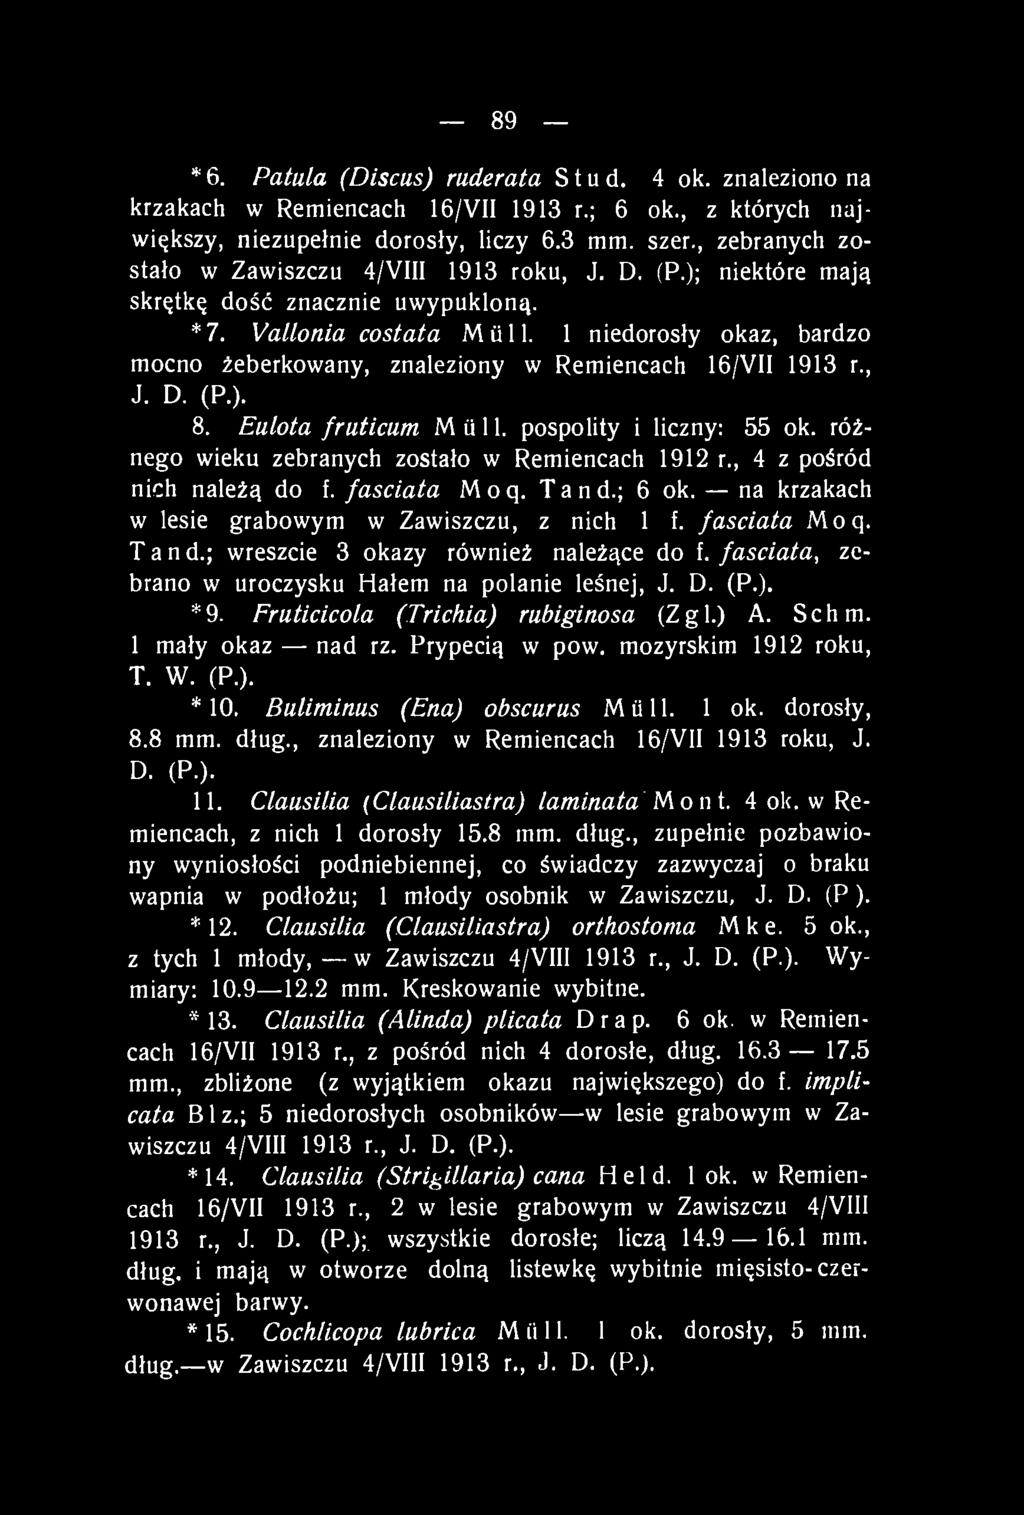 1 niedorosły okaz, bardzo mocno żeberkowany, znaleziony w Remiencach 16/VII 1913 r., J. D. (P.). 8. Eulota fruticum Müll, pospolity i liczny: 55 ok.